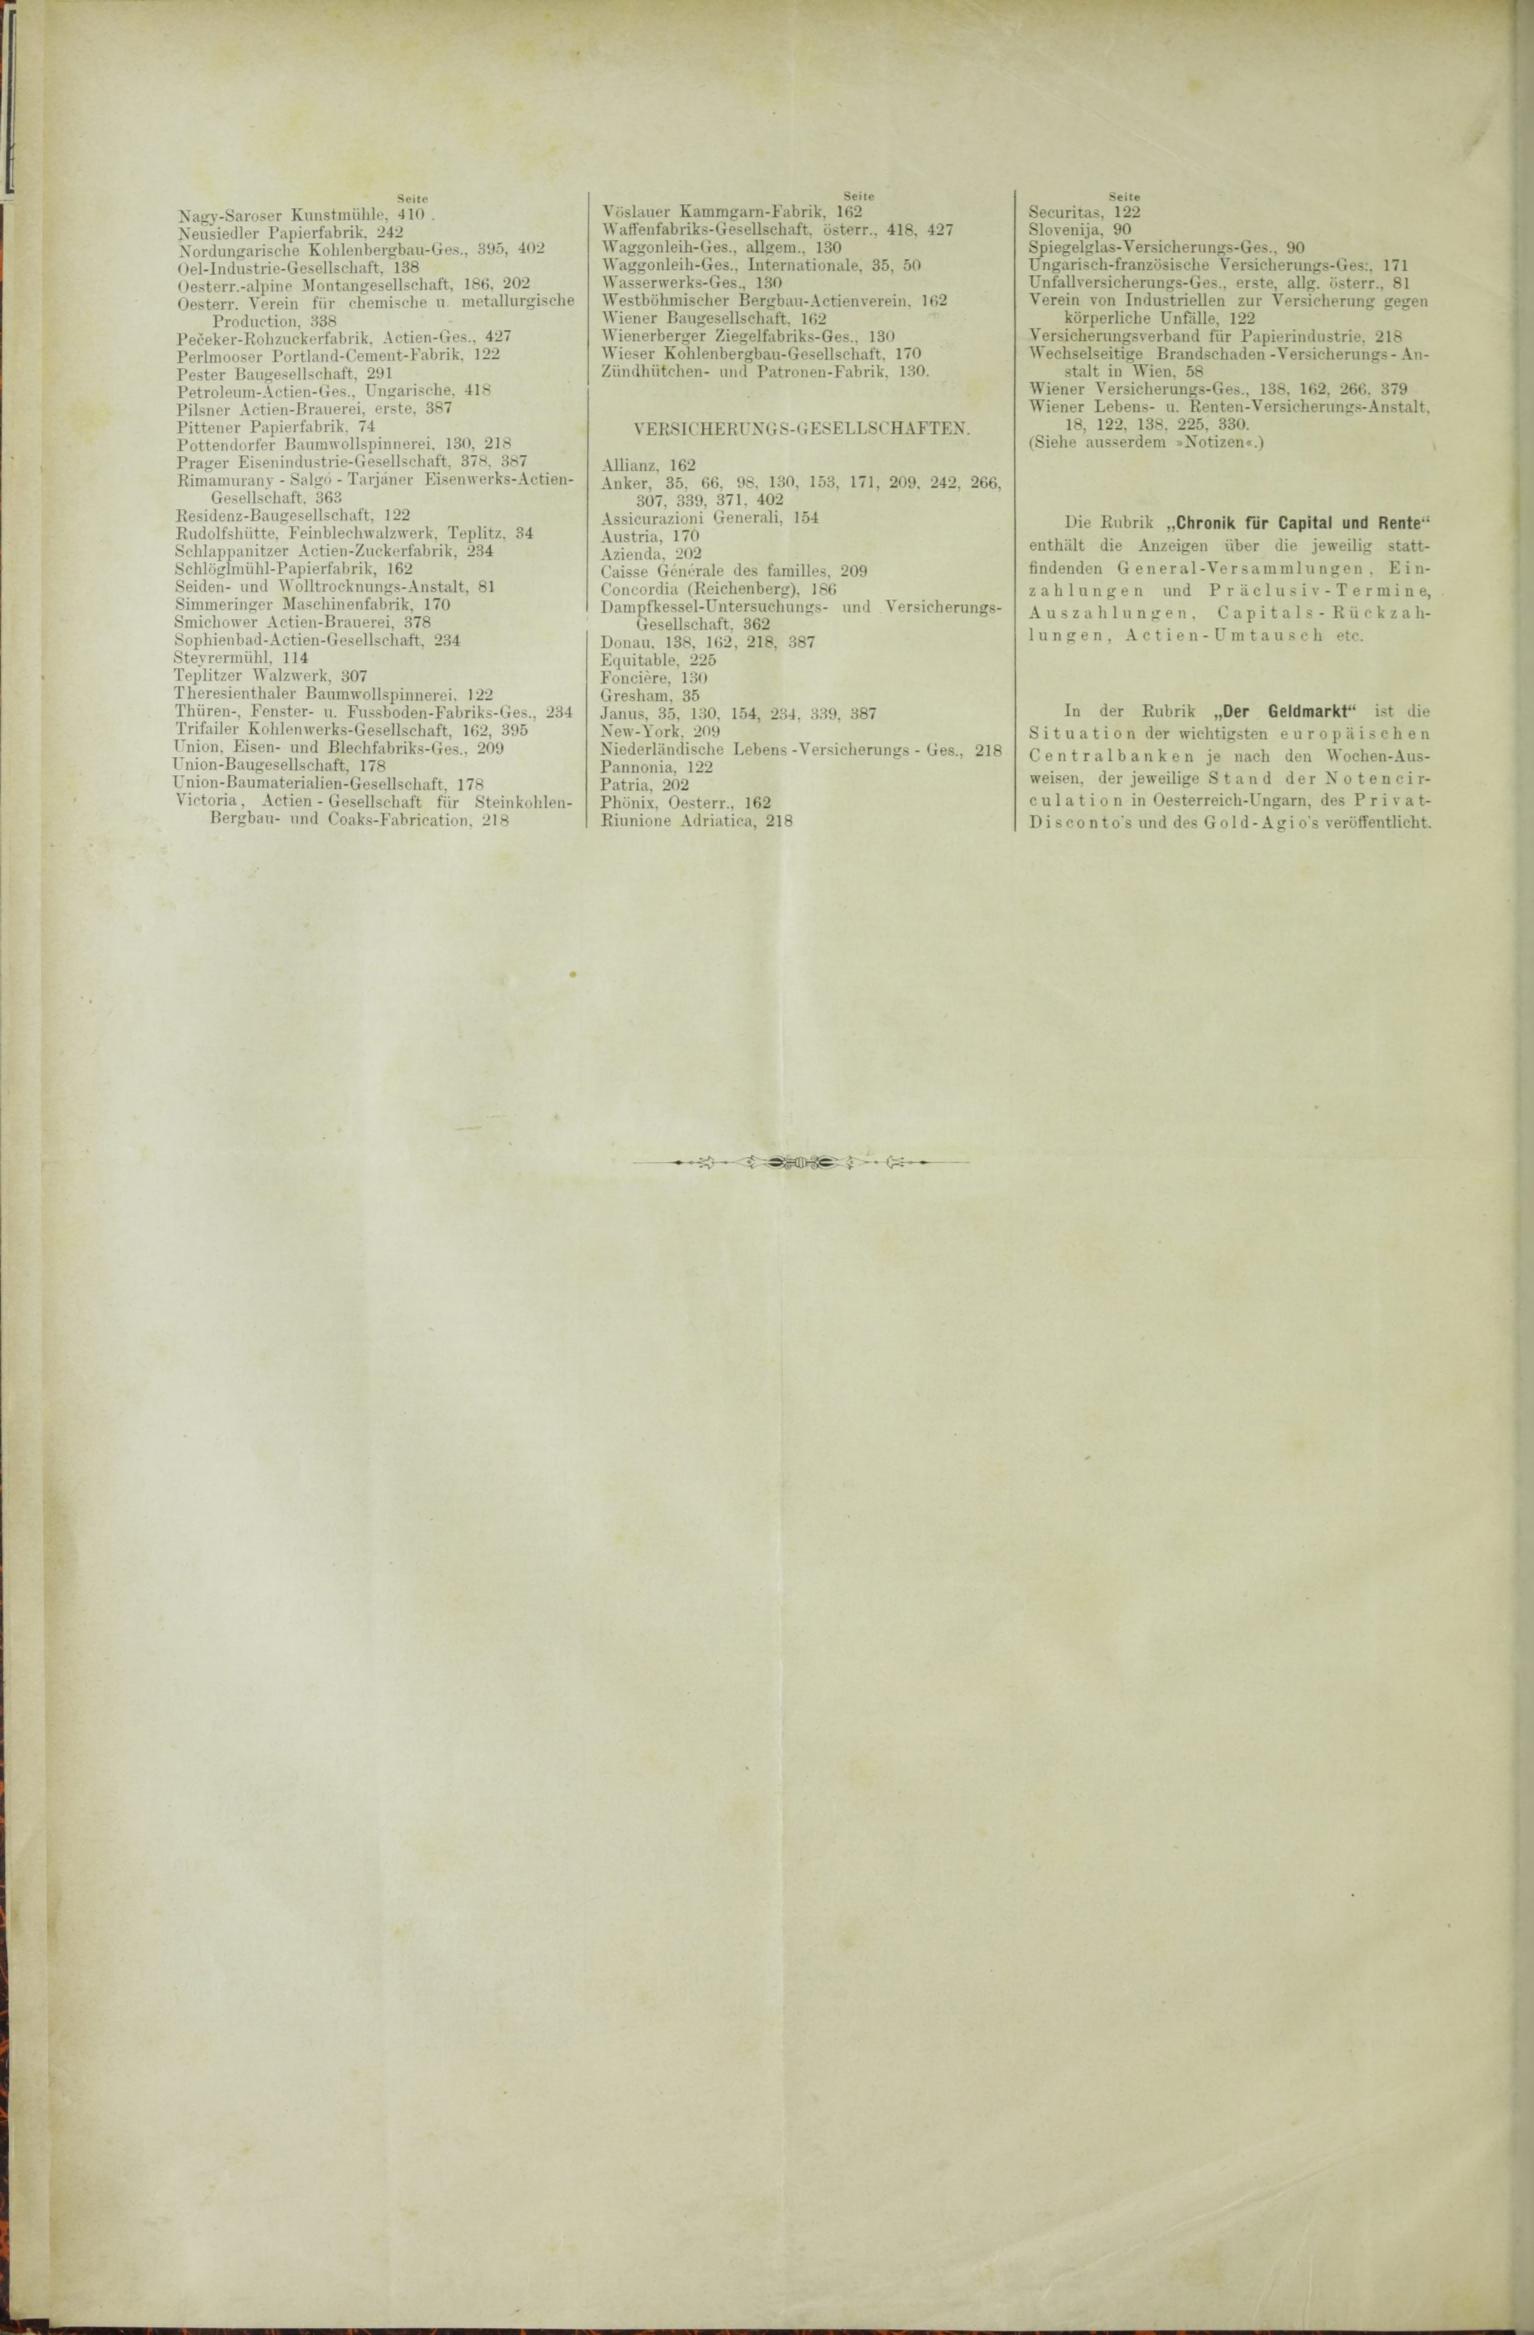 Der Tresor 17.09.1885 - Seite 10